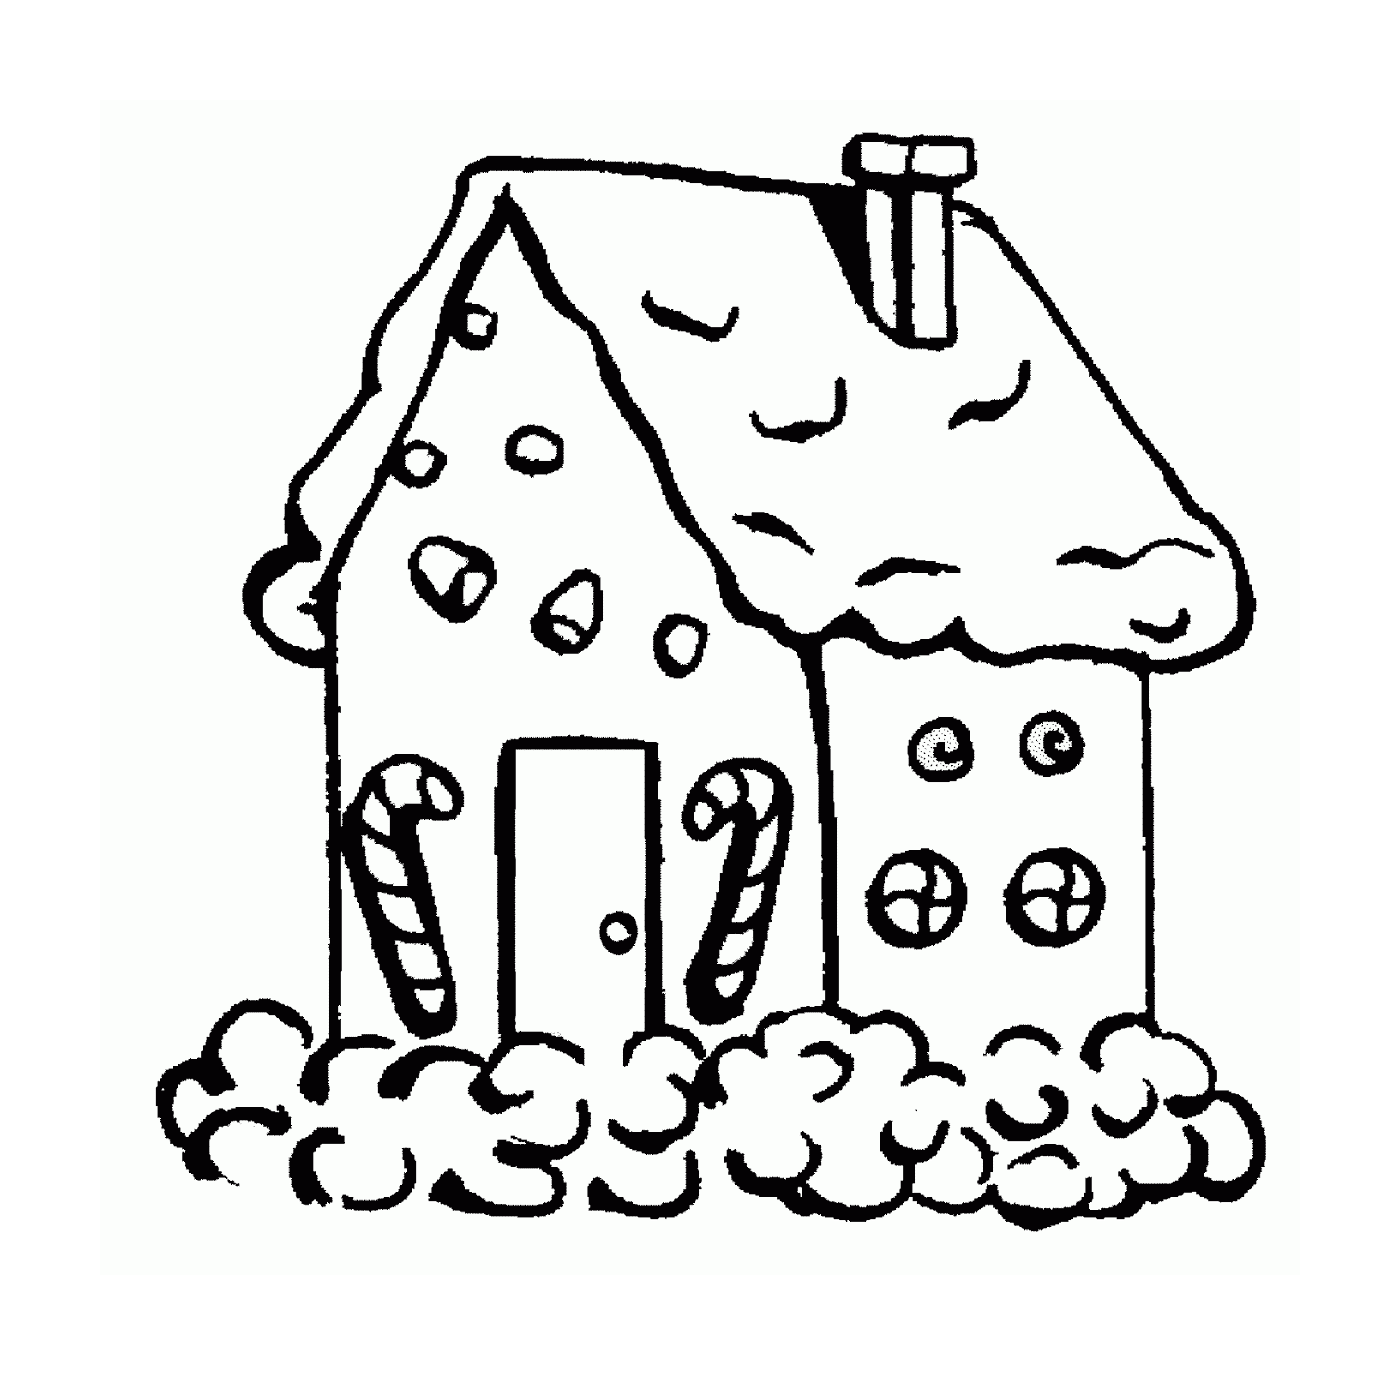  Casa hecha de pan de jengibre cubierto de nieve 